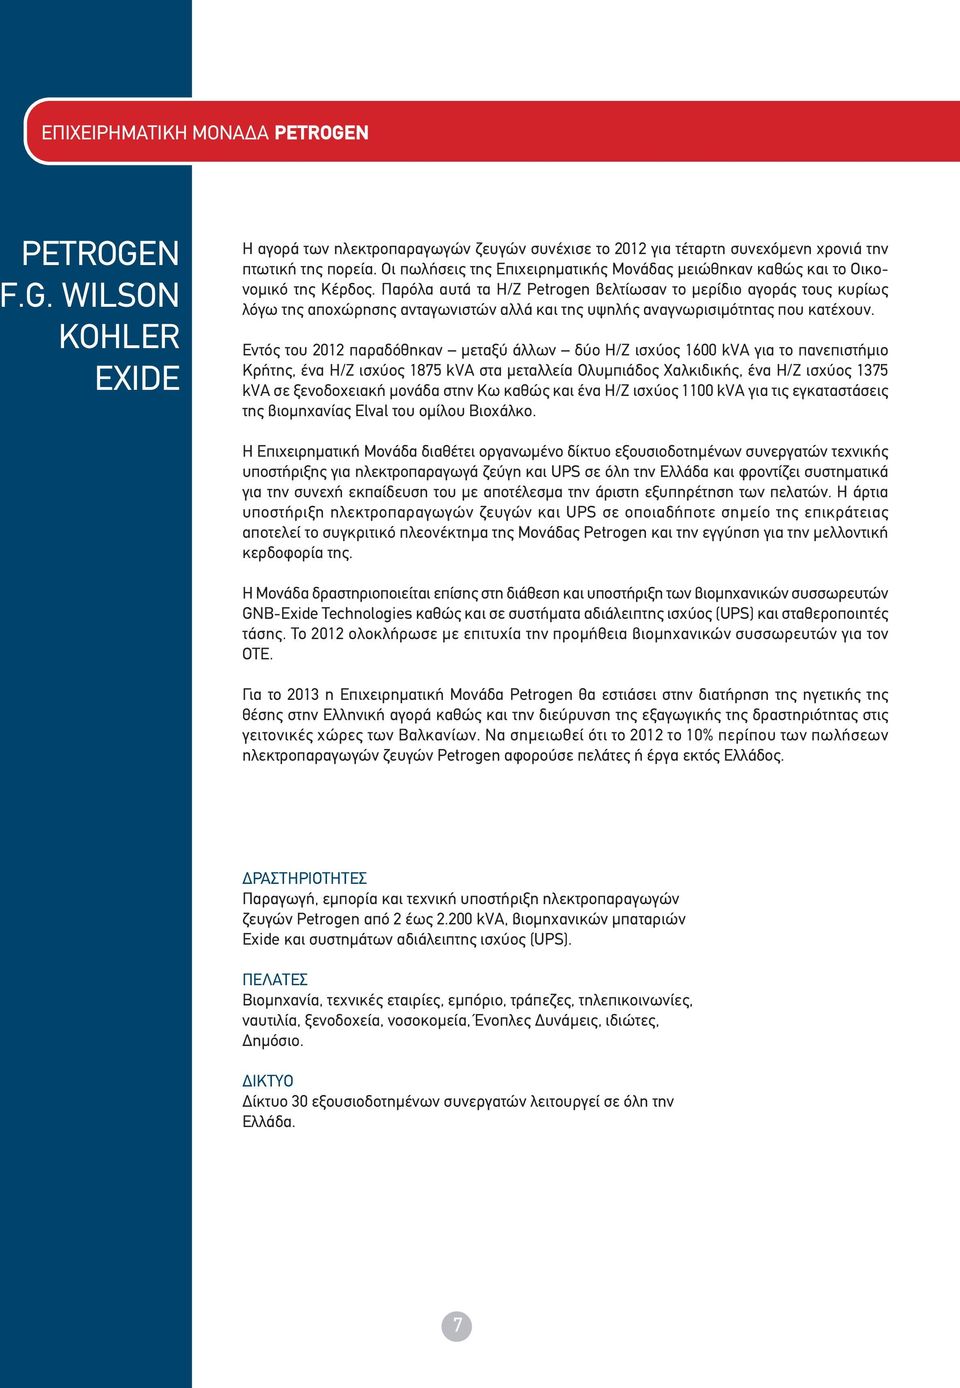 Παρόλα αυτά τα Η/Ζ Petrogen βελτίωσαν το μερίδιο αγοράς τους κυρίως λόγω της αποχώρησης ανταγωνιστών αλλά και της υψηλής αναγνωρισιμότητας που κατέχουν.